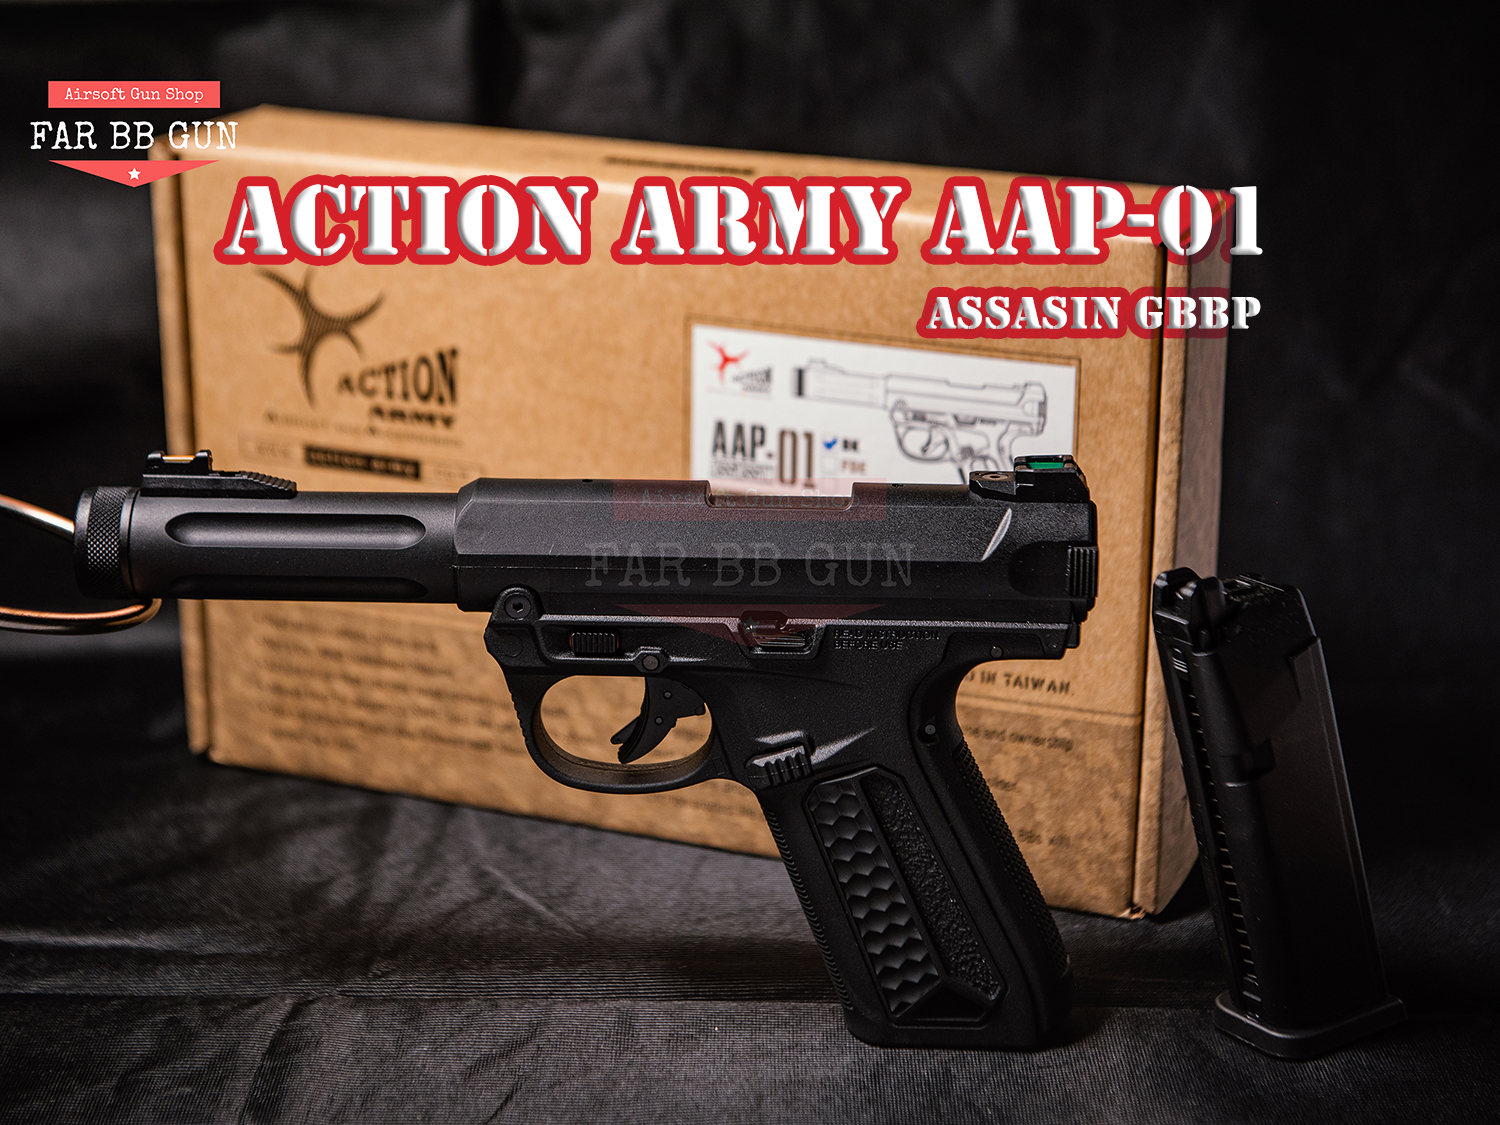 ของเล่น บีบีกัน Action Army AAP-01 Assassin GBBP สีดำ ระบบกรีนแก๊ส